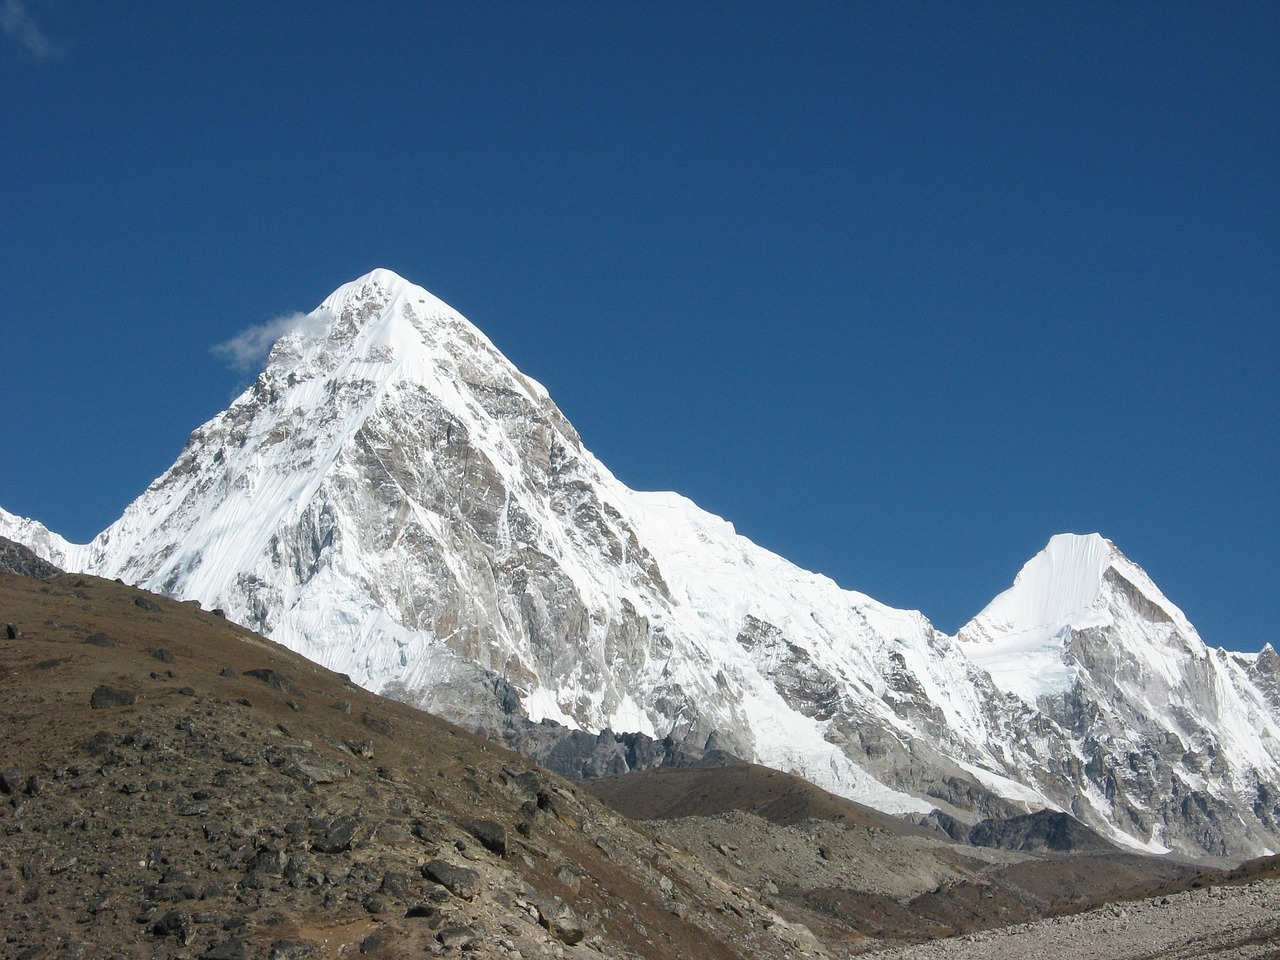 尼泊尔